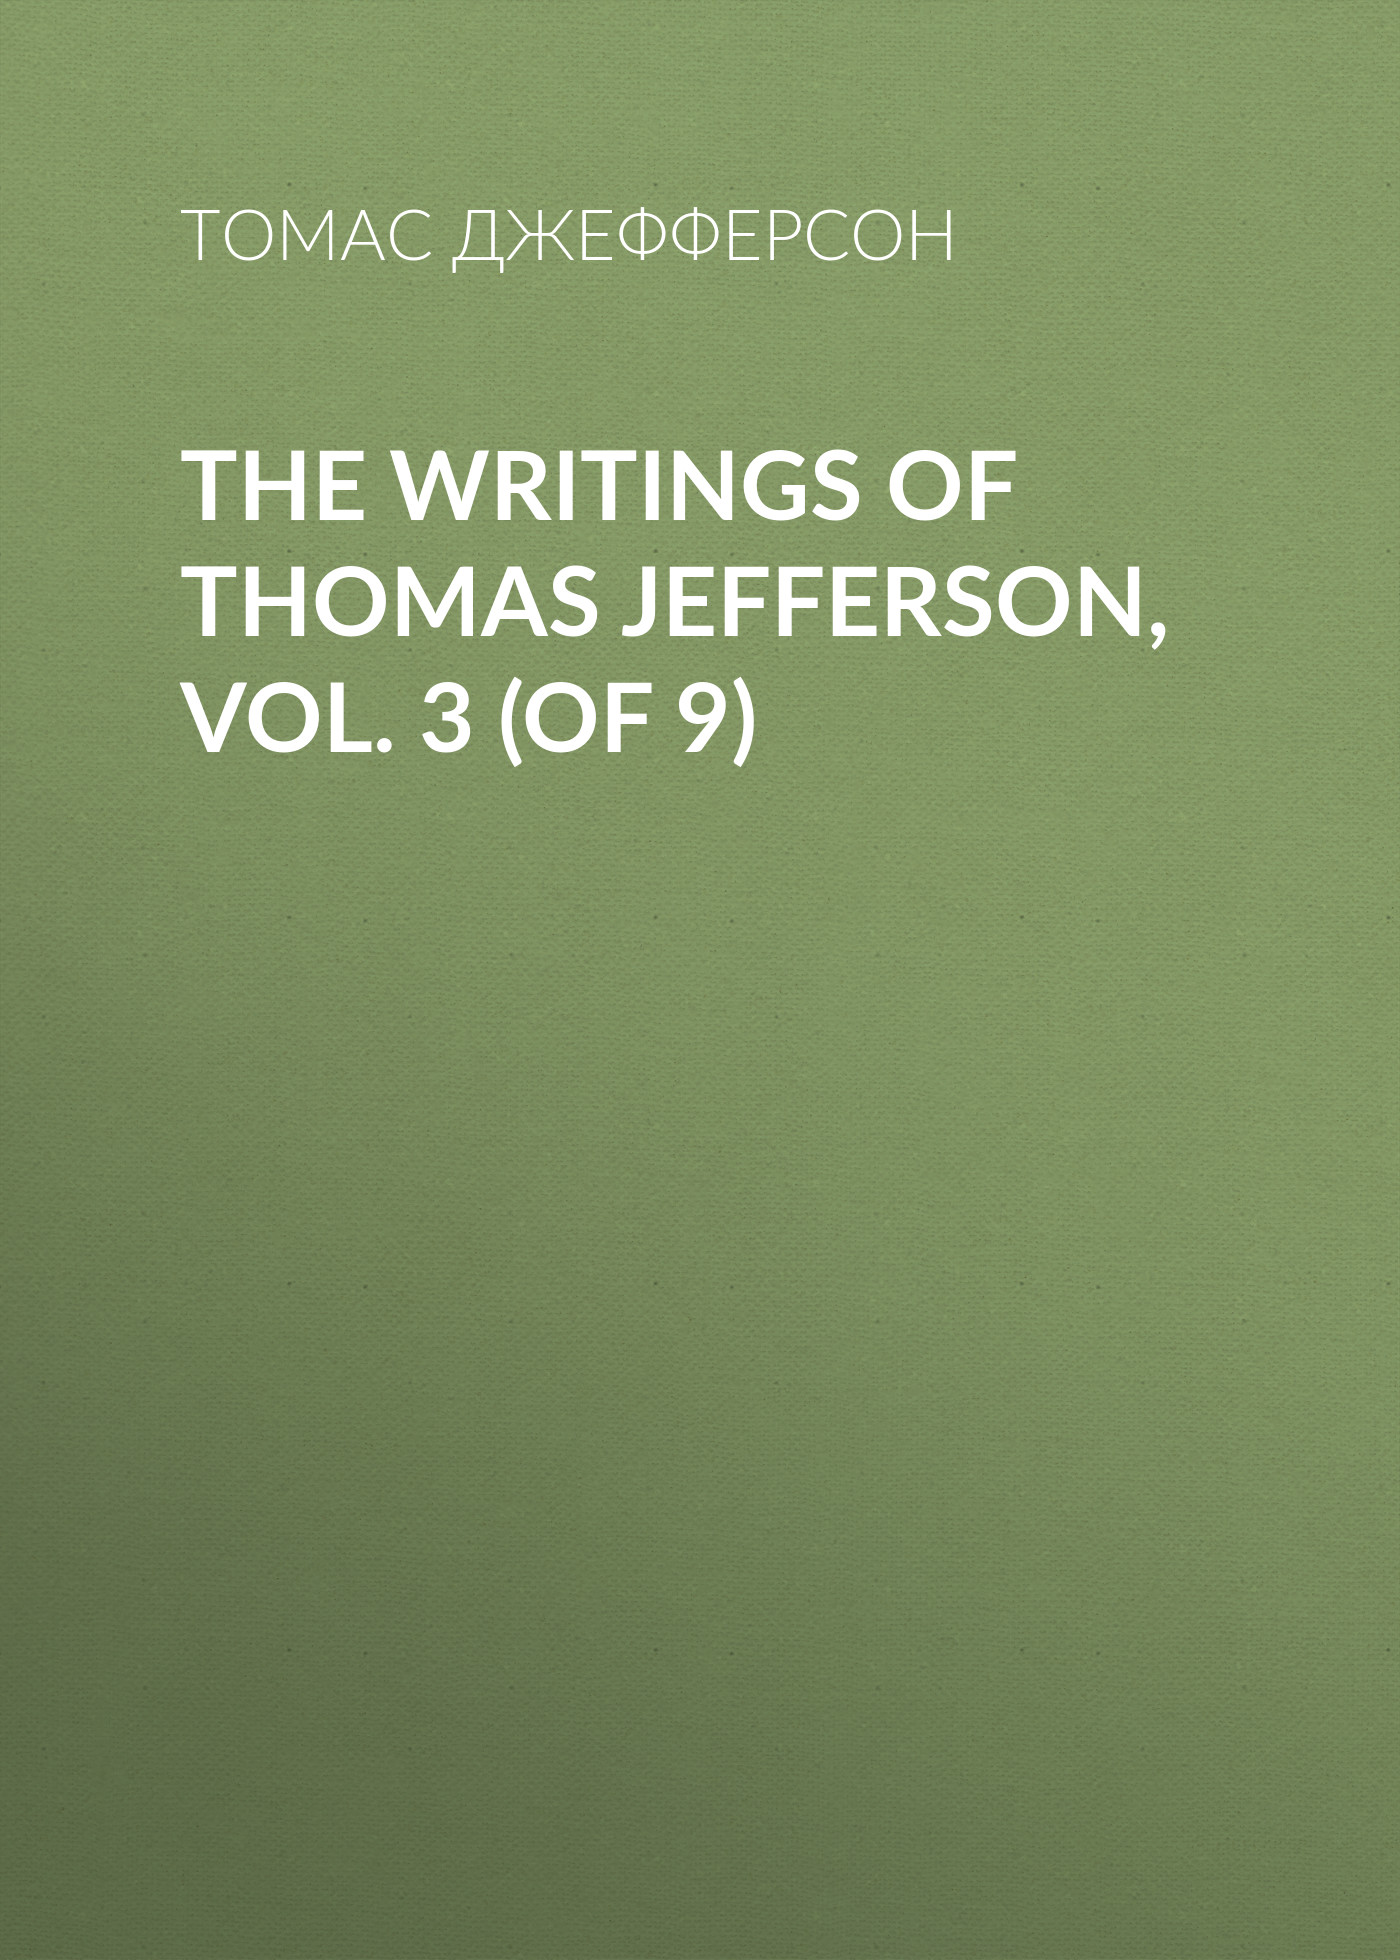 Книга The Writings of Thomas Jefferson, Vol. 3 (of 9) из серии , созданная Томас Джефферсон, может относится к жанру Биографии и Мемуары, Зарубежная старинная литература. Стоимость электронной книги The Writings of Thomas Jefferson, Vol. 3 (of 9) с идентификатором 34839254 составляет 0 руб.